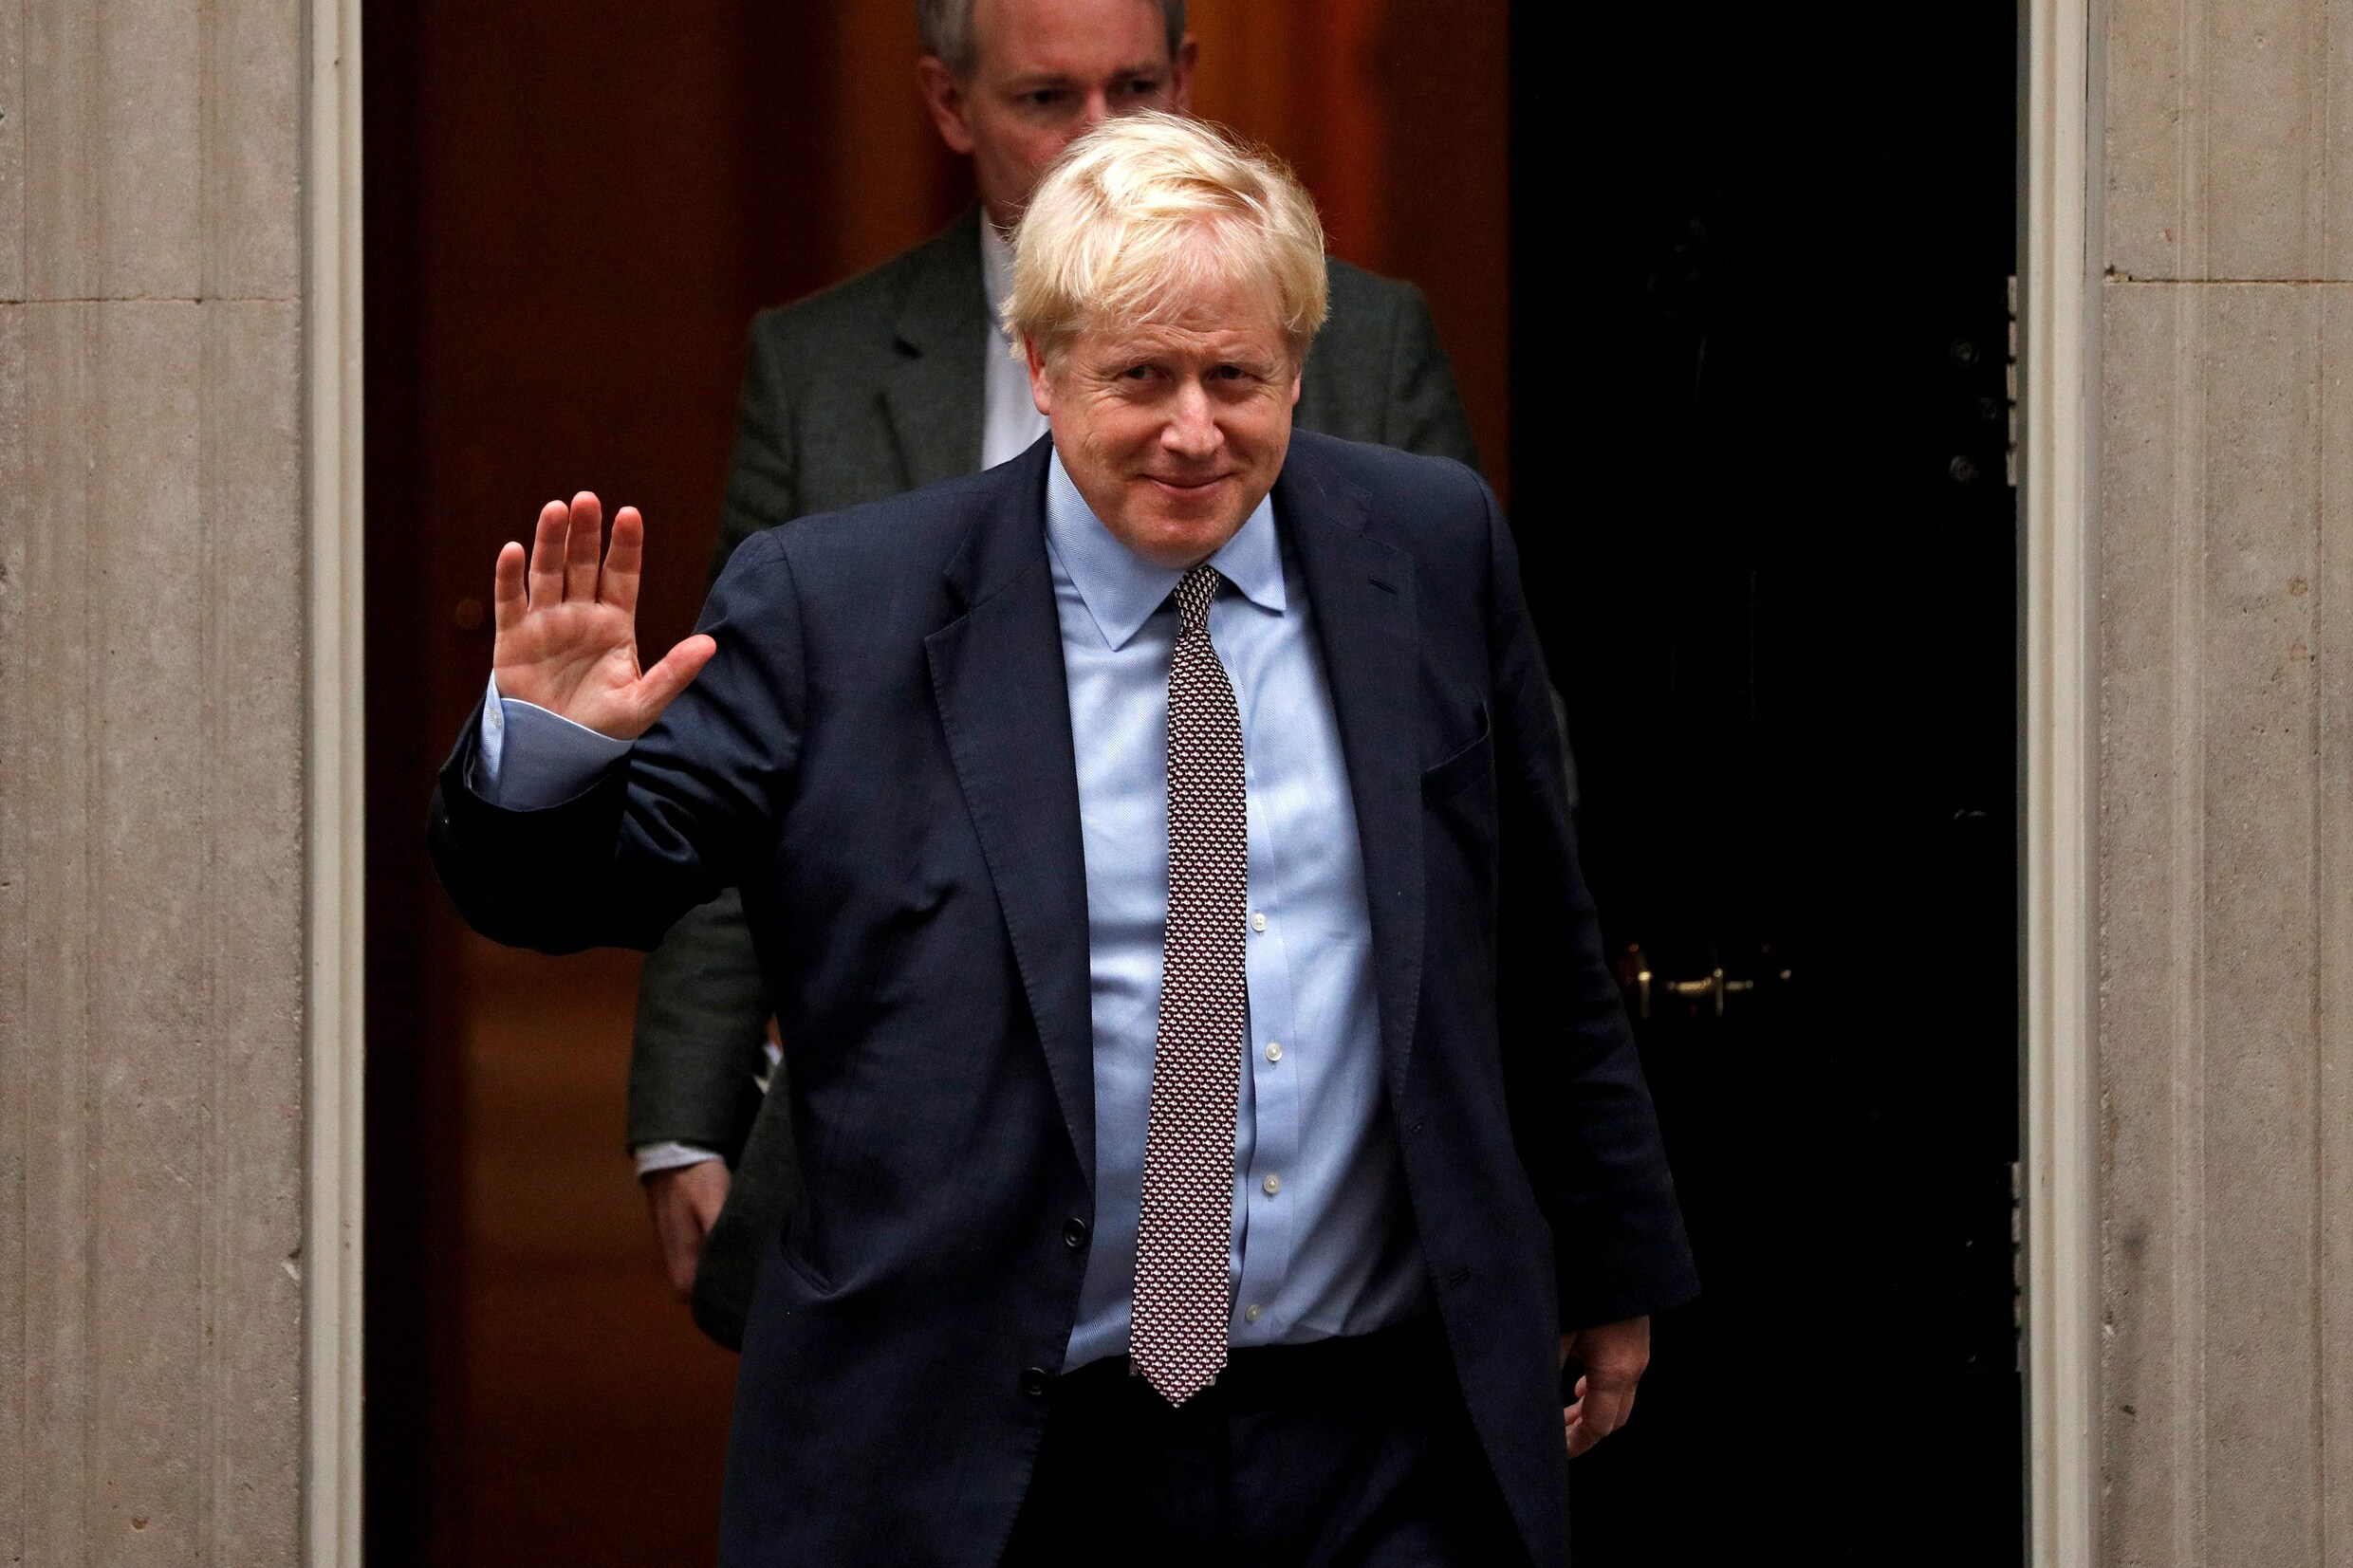 Britse premier Boris Johnson wil verkiezingen op 12 december, brexit wordt uitgesteld